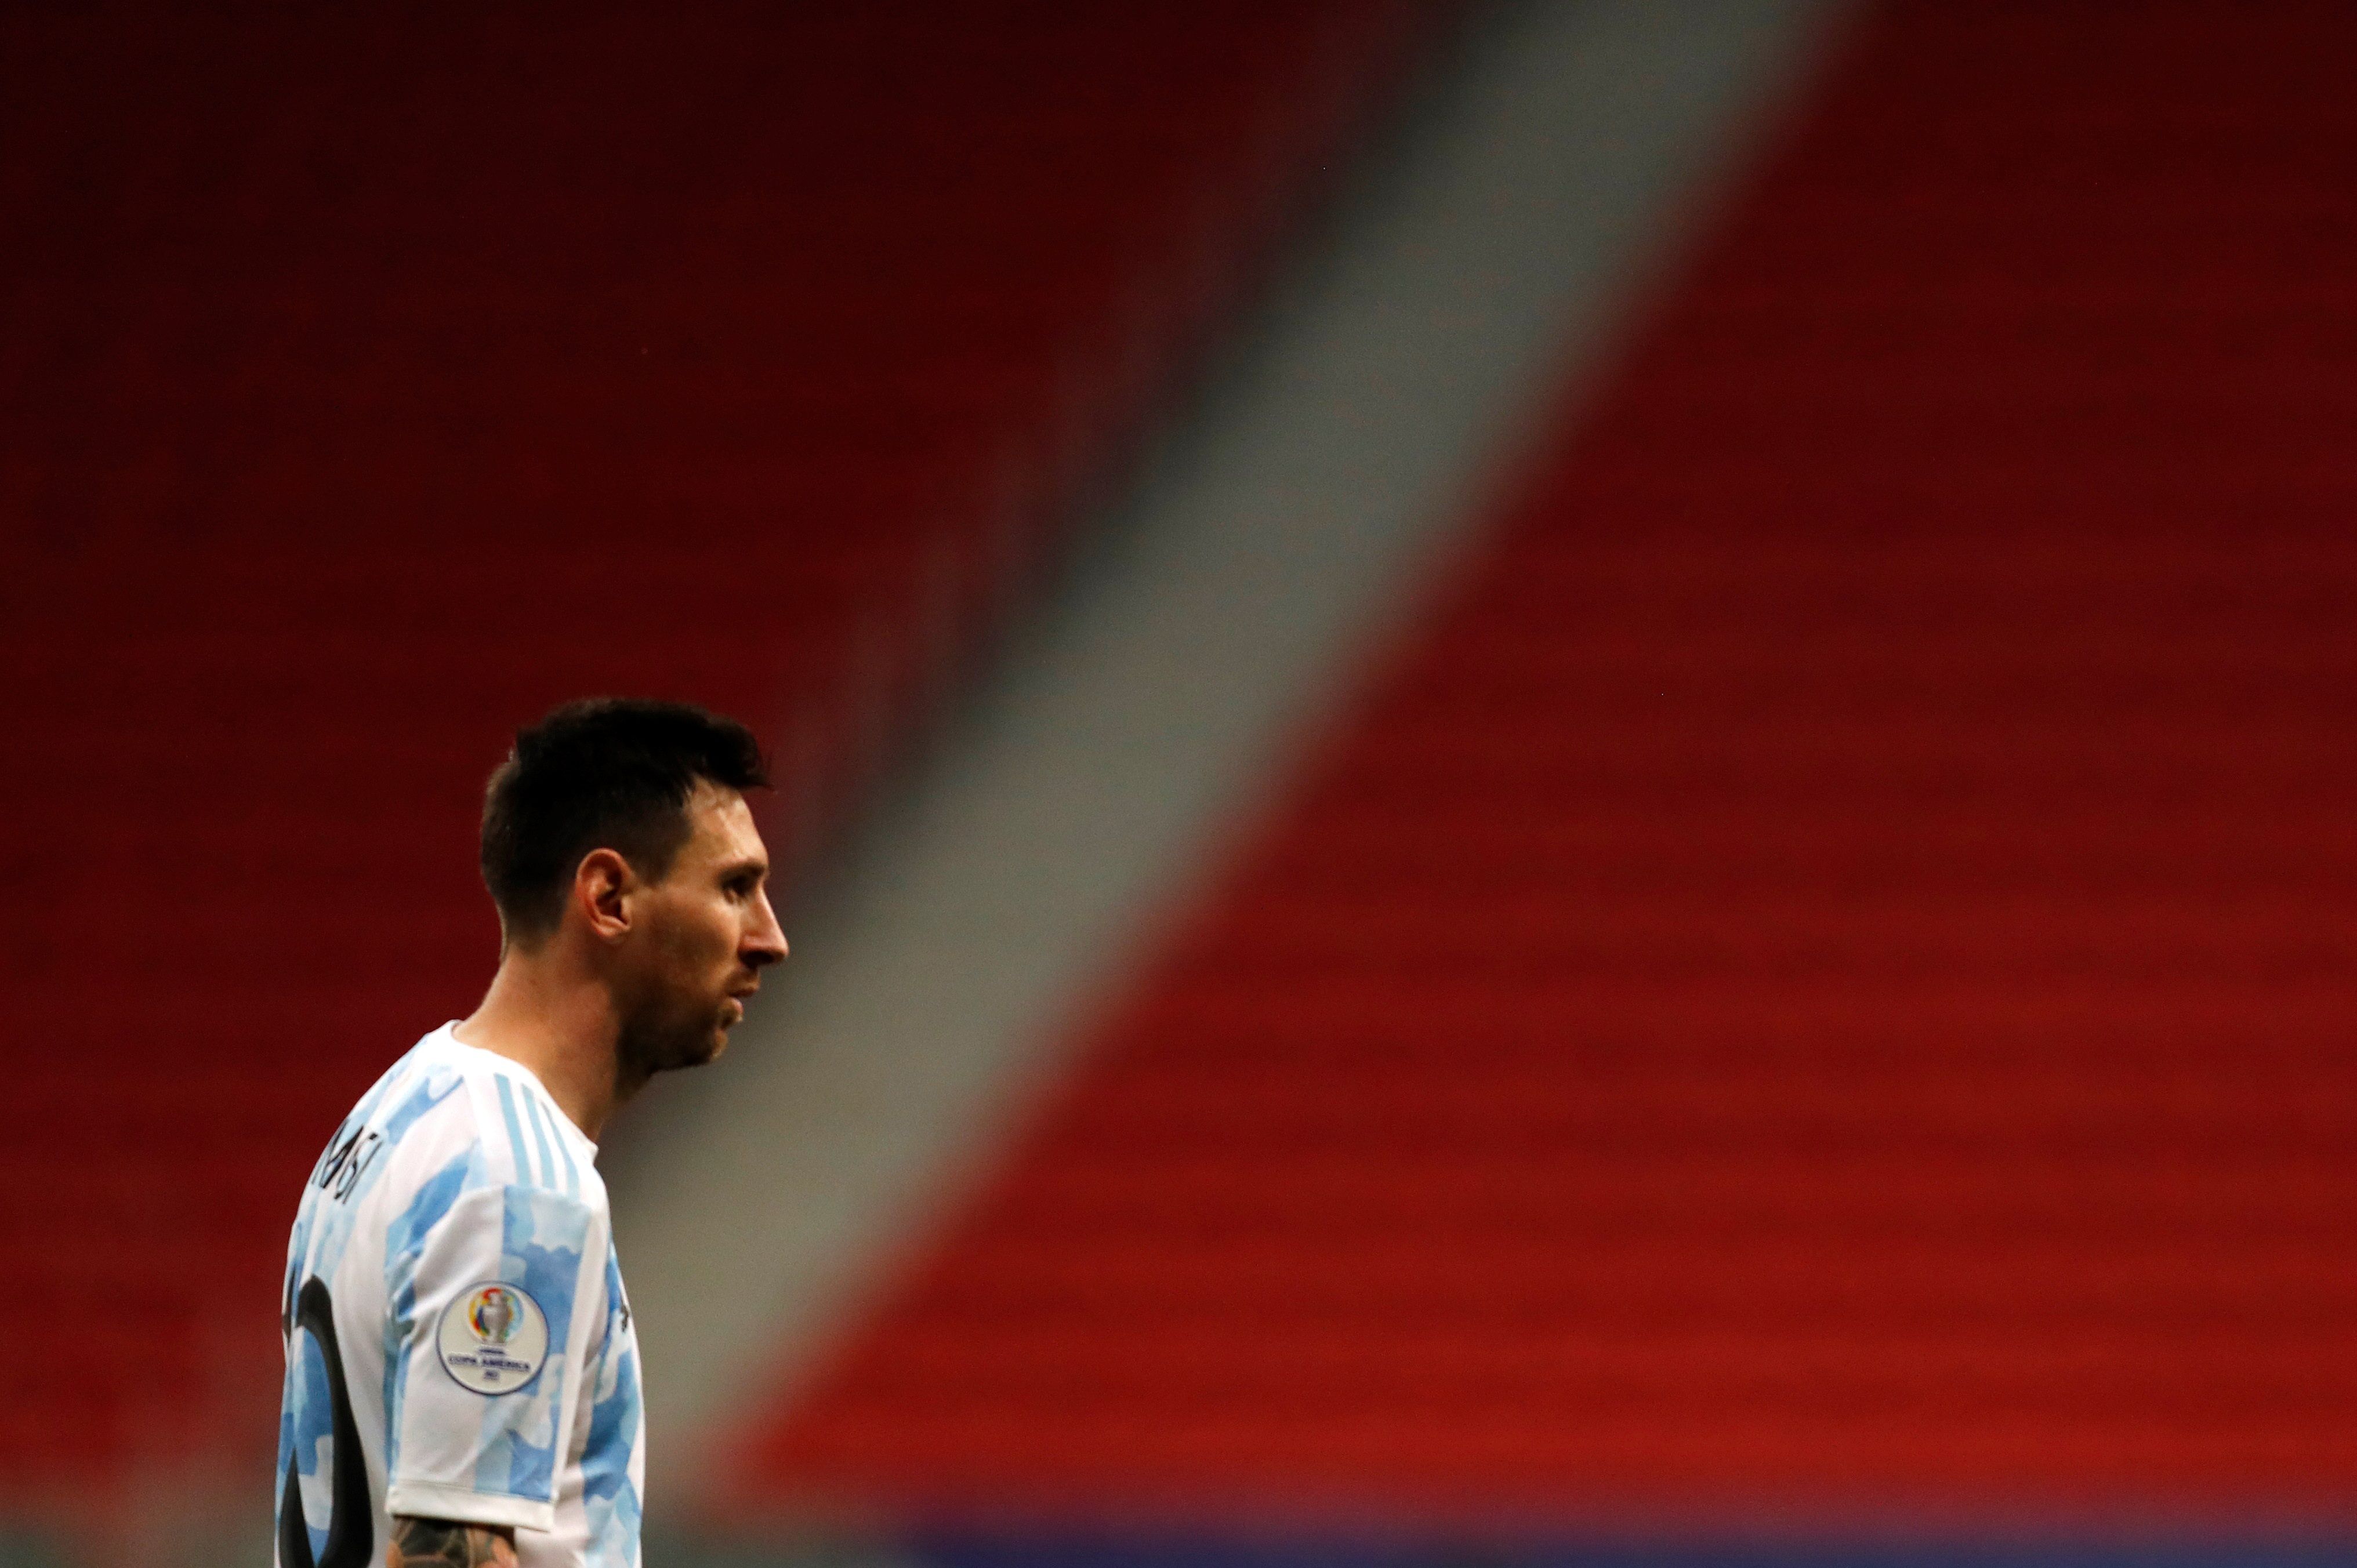 Lionel Messi de Argentinaha sido pieza fundamental para su selección en esta Copa América. Foto Prensa Libre: EFE.